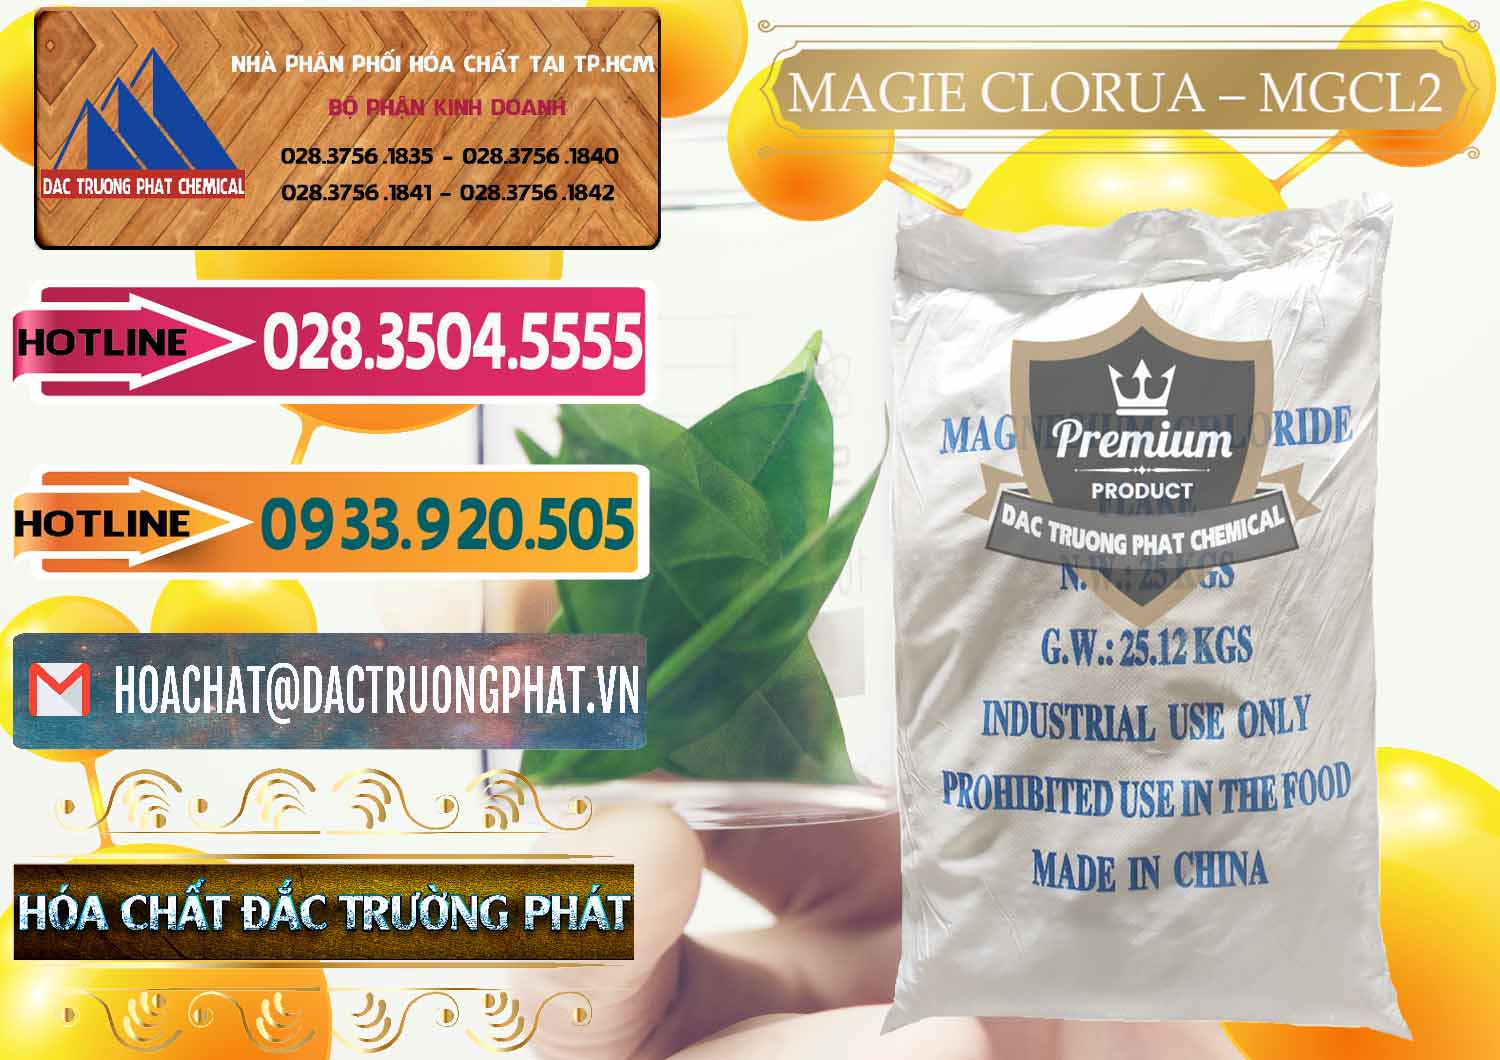 Nơi chuyên cung ứng _ bán Magie Clorua – MGCL2 96% Dạng Vảy Trung Quốc China - 0091 - Cty chuyên cung cấp _ nhập khẩu hóa chất tại TP.HCM - dactruongphat.vn